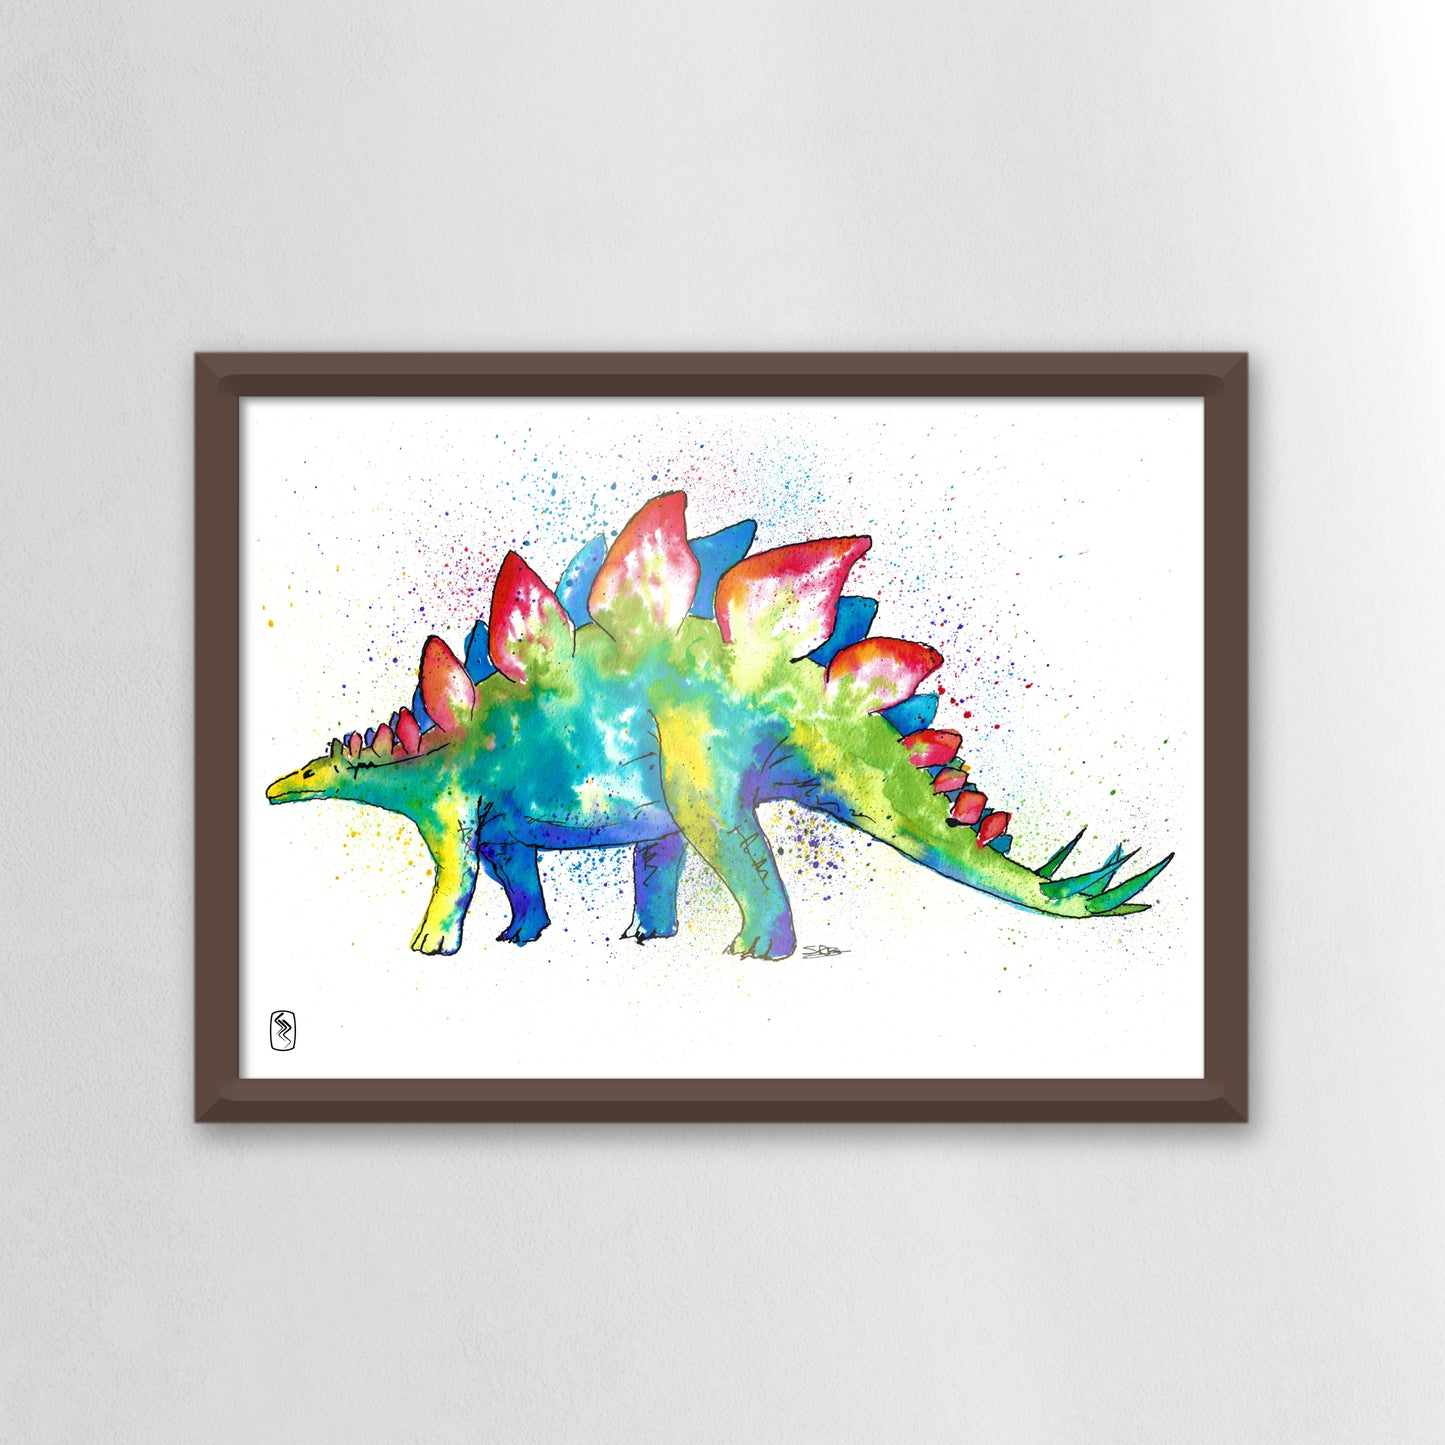 Stegasaurus Print - A5 / A4 / A3